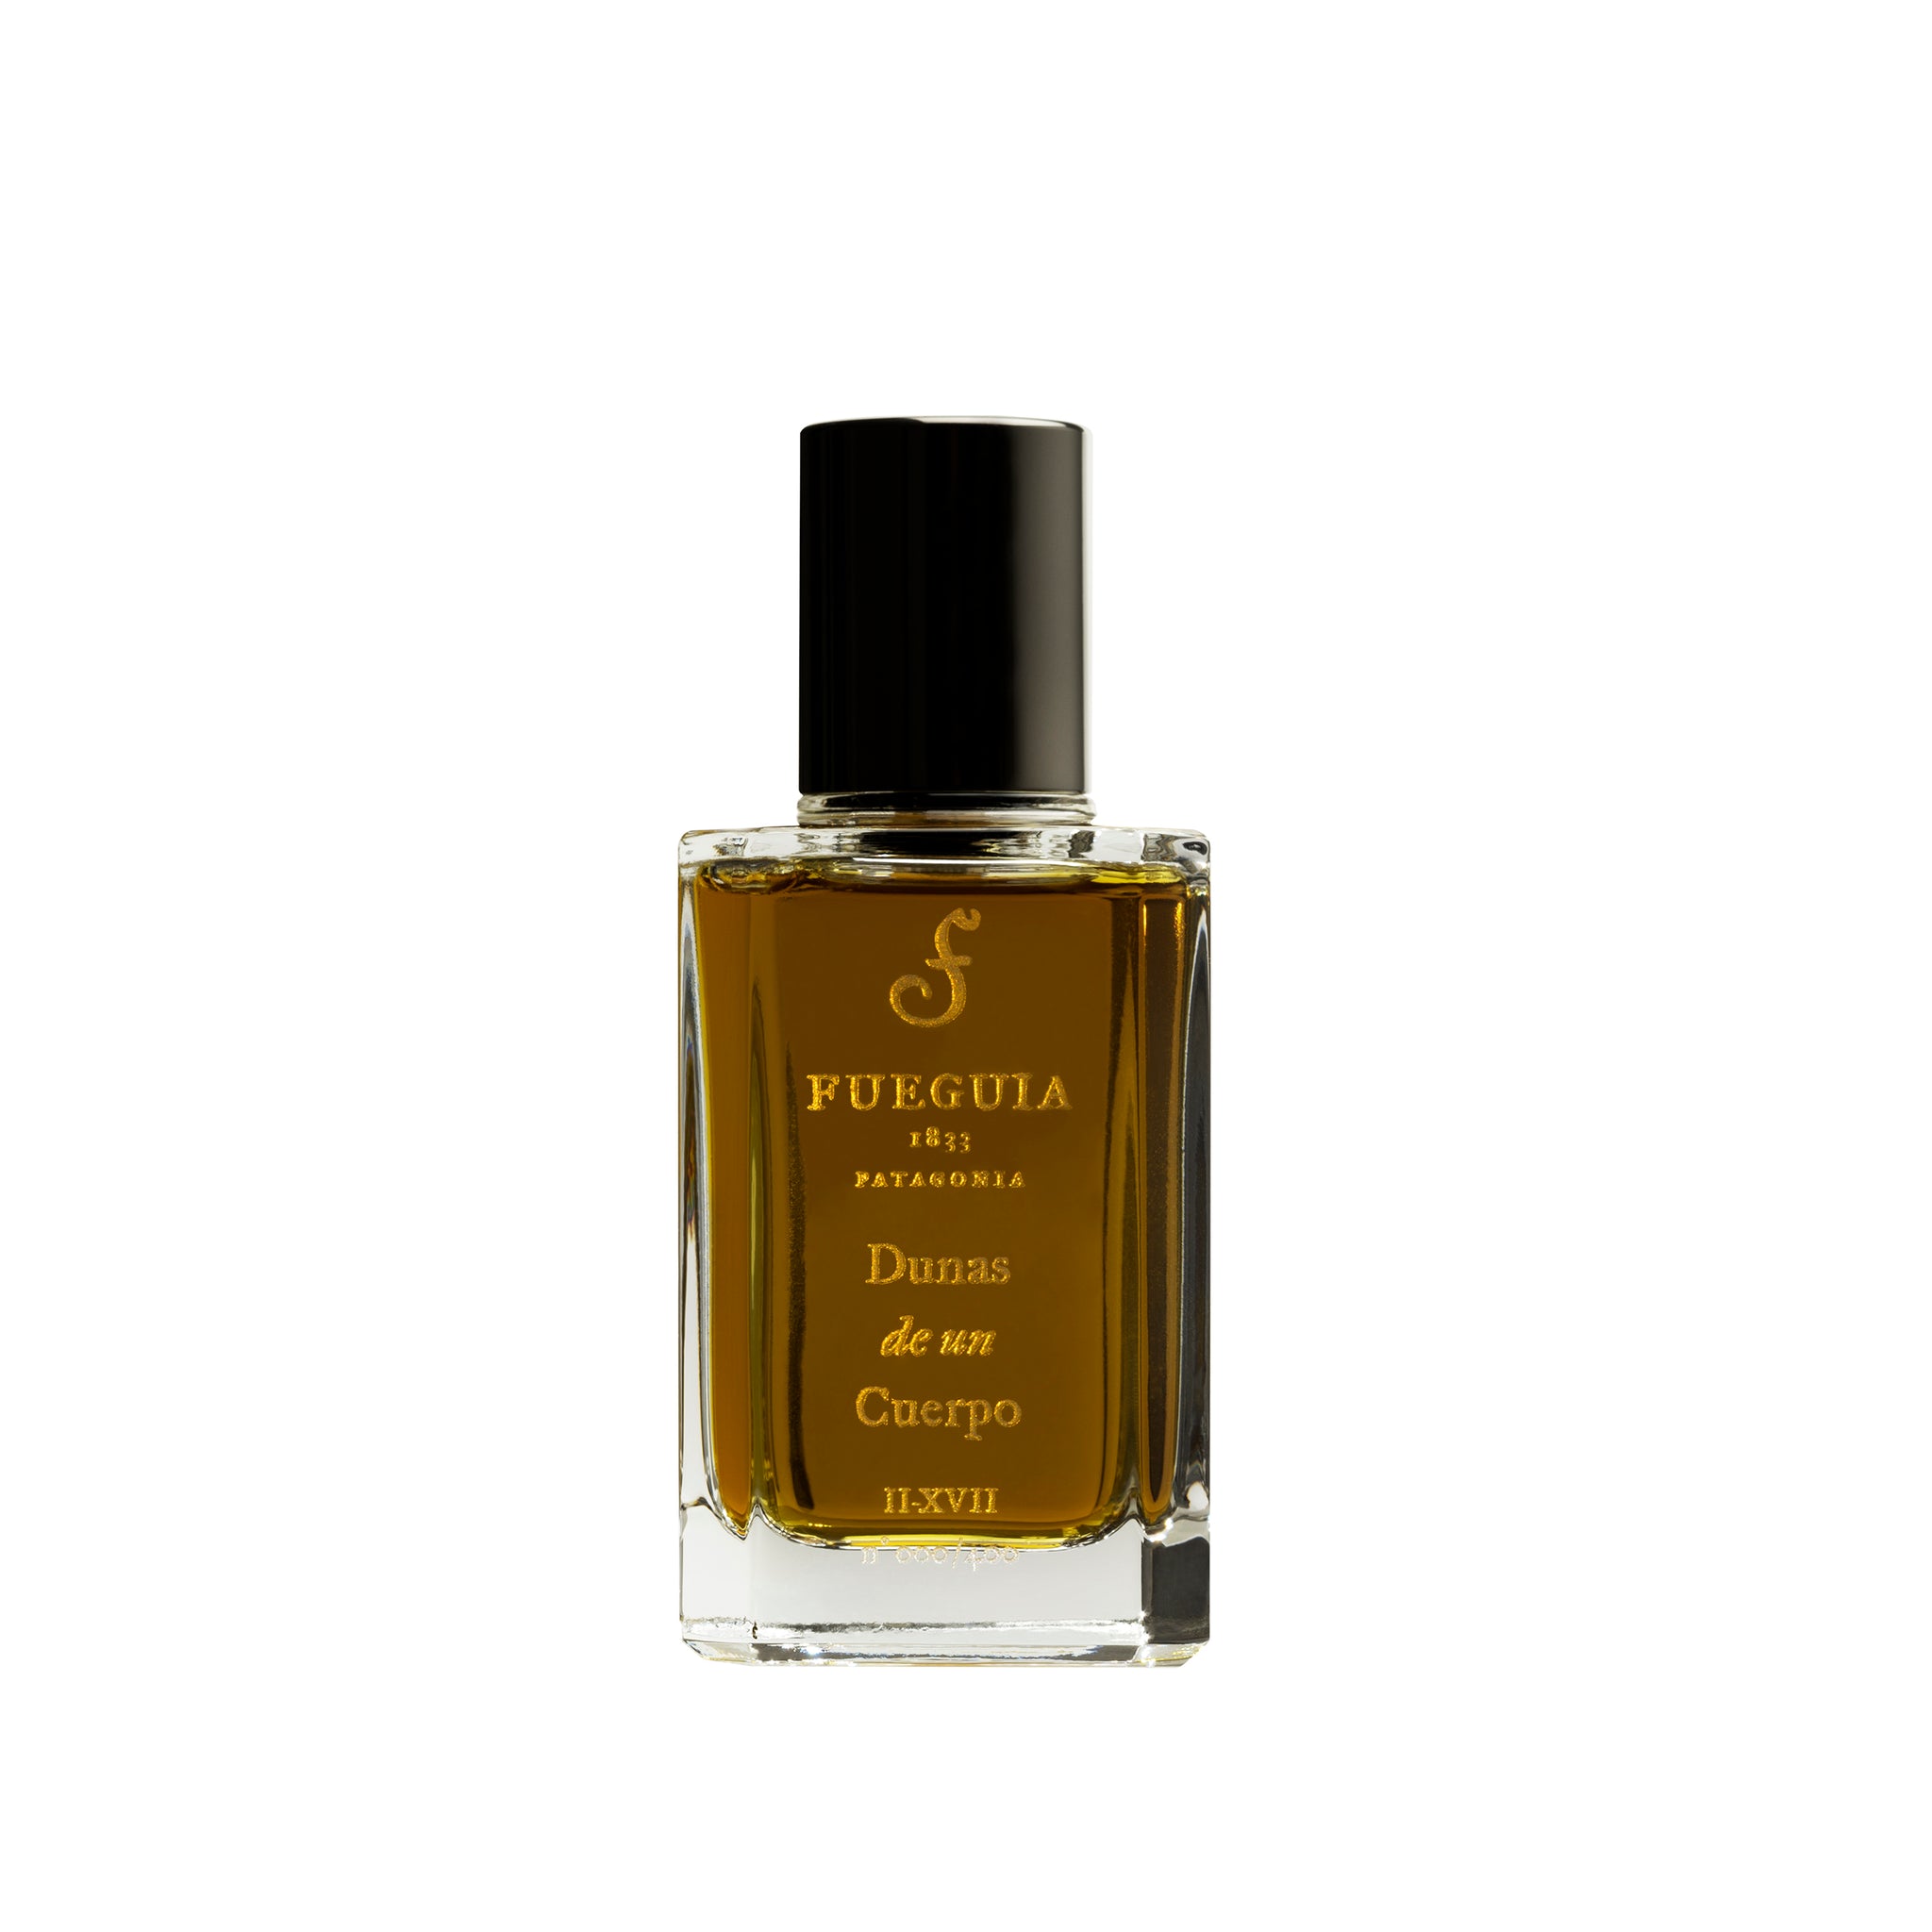 Dunas de un Cuerpo Fueguia 1833 Patagonia niche luxury perfume – Avery